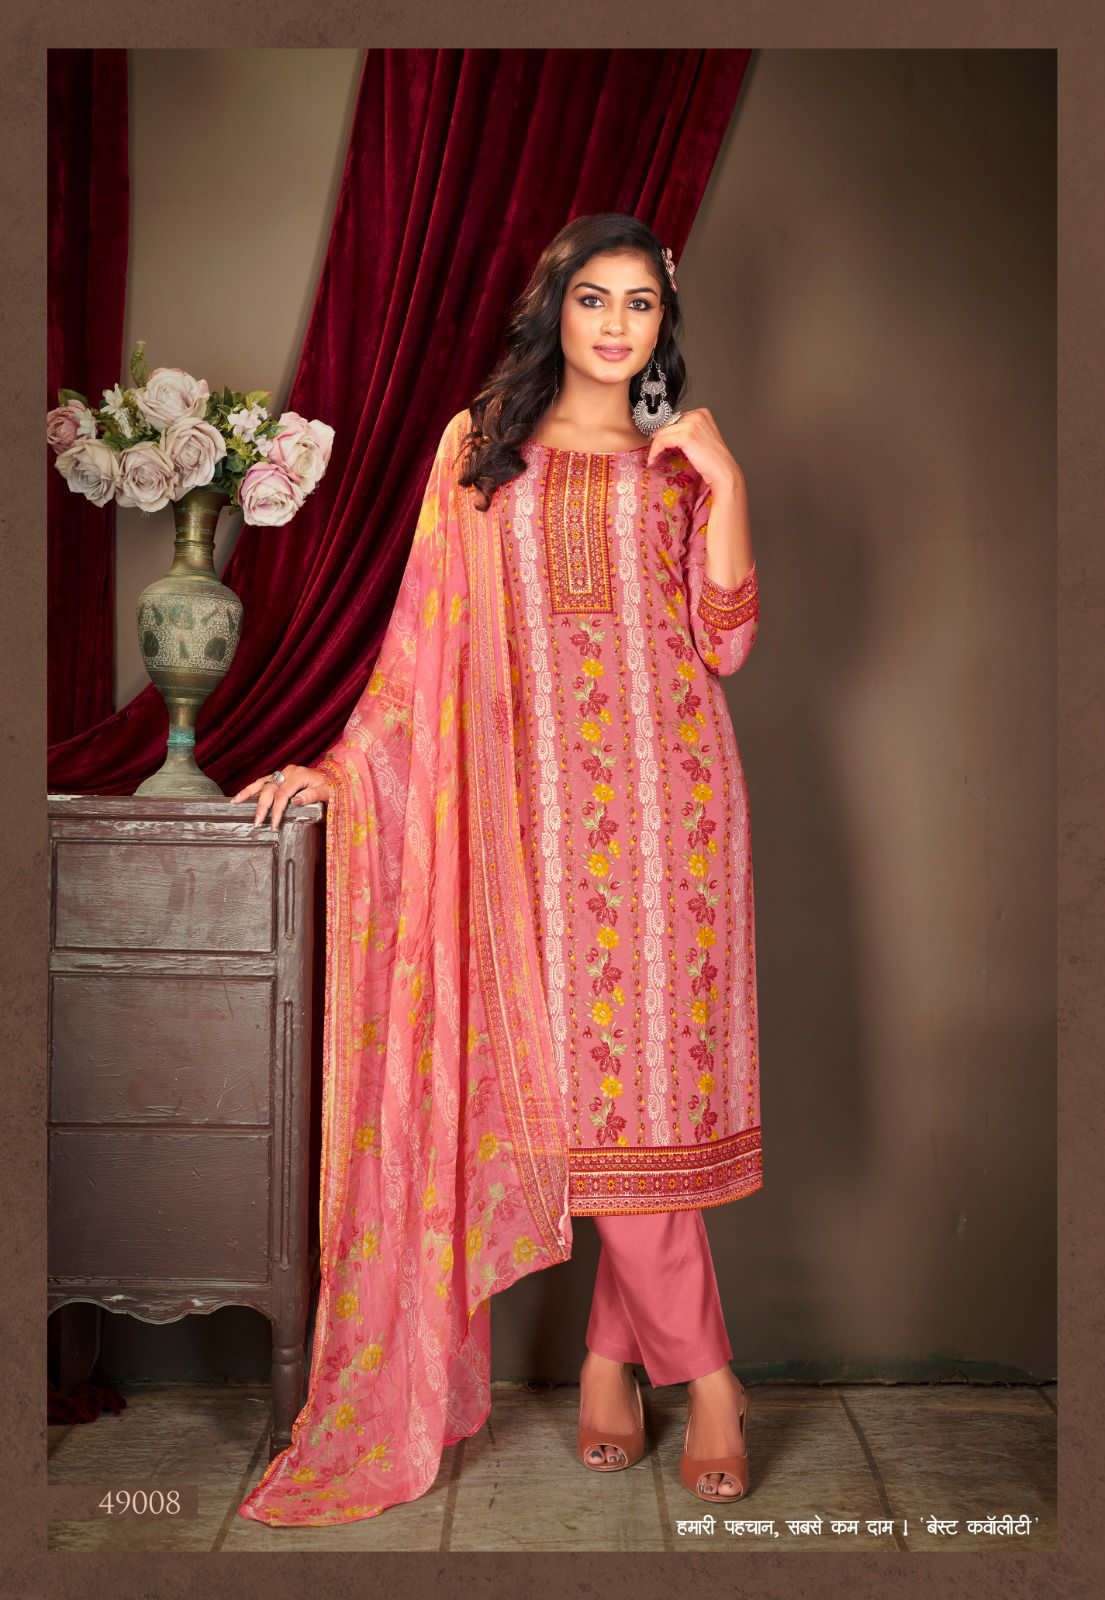 shiv gori silk mills panjabi kudi vol-49 49001-49012 series fancy salwar kameez wholesaler surat gujarat